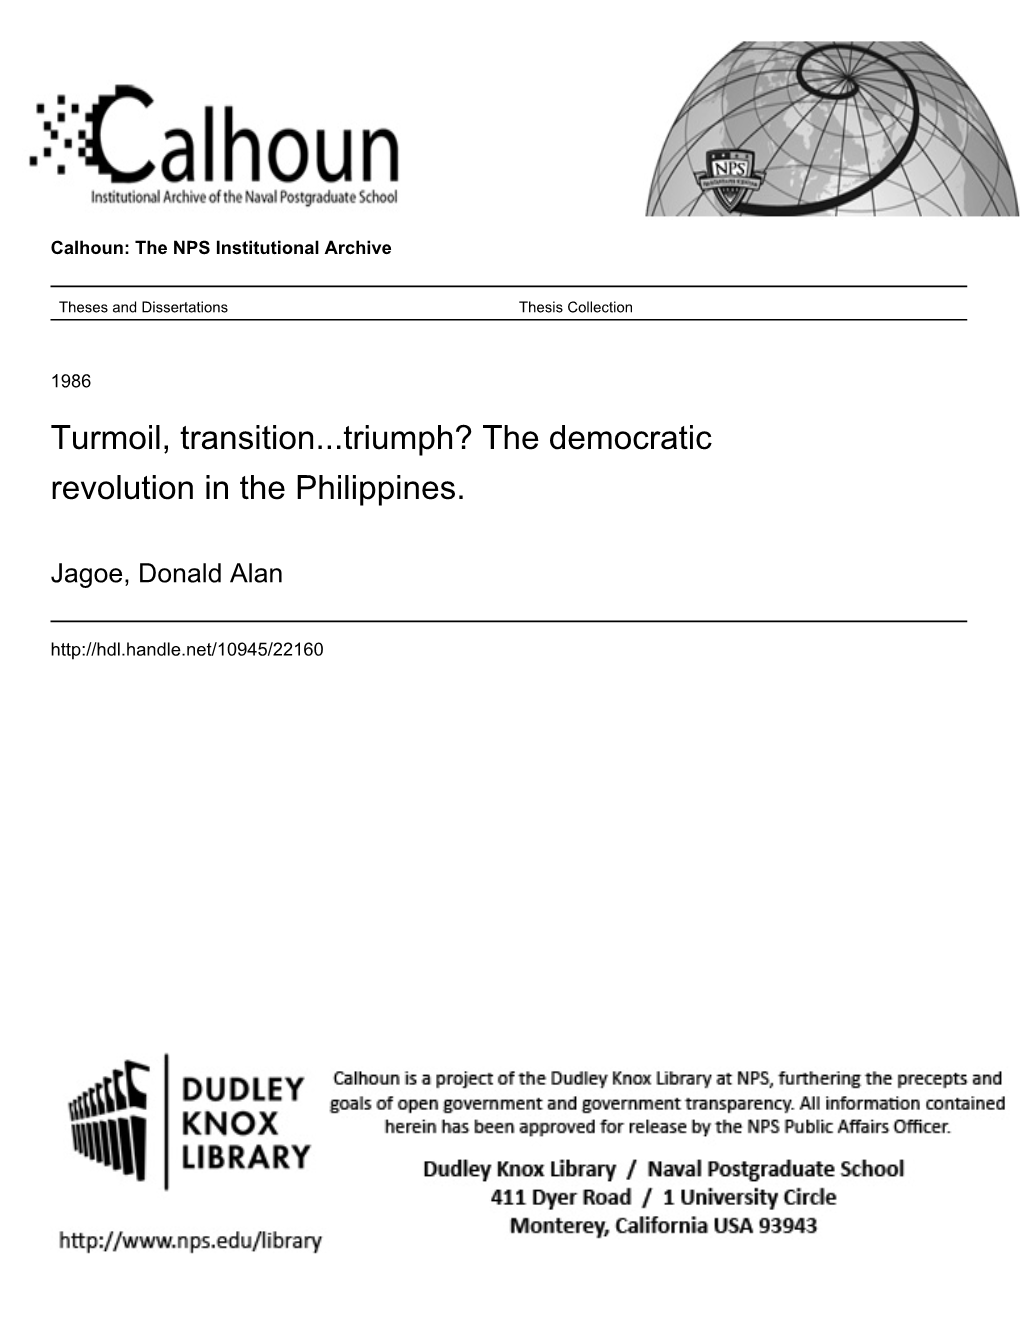 Turmoil, Transition...Triumph? the Democratic Revolution in the Philippines